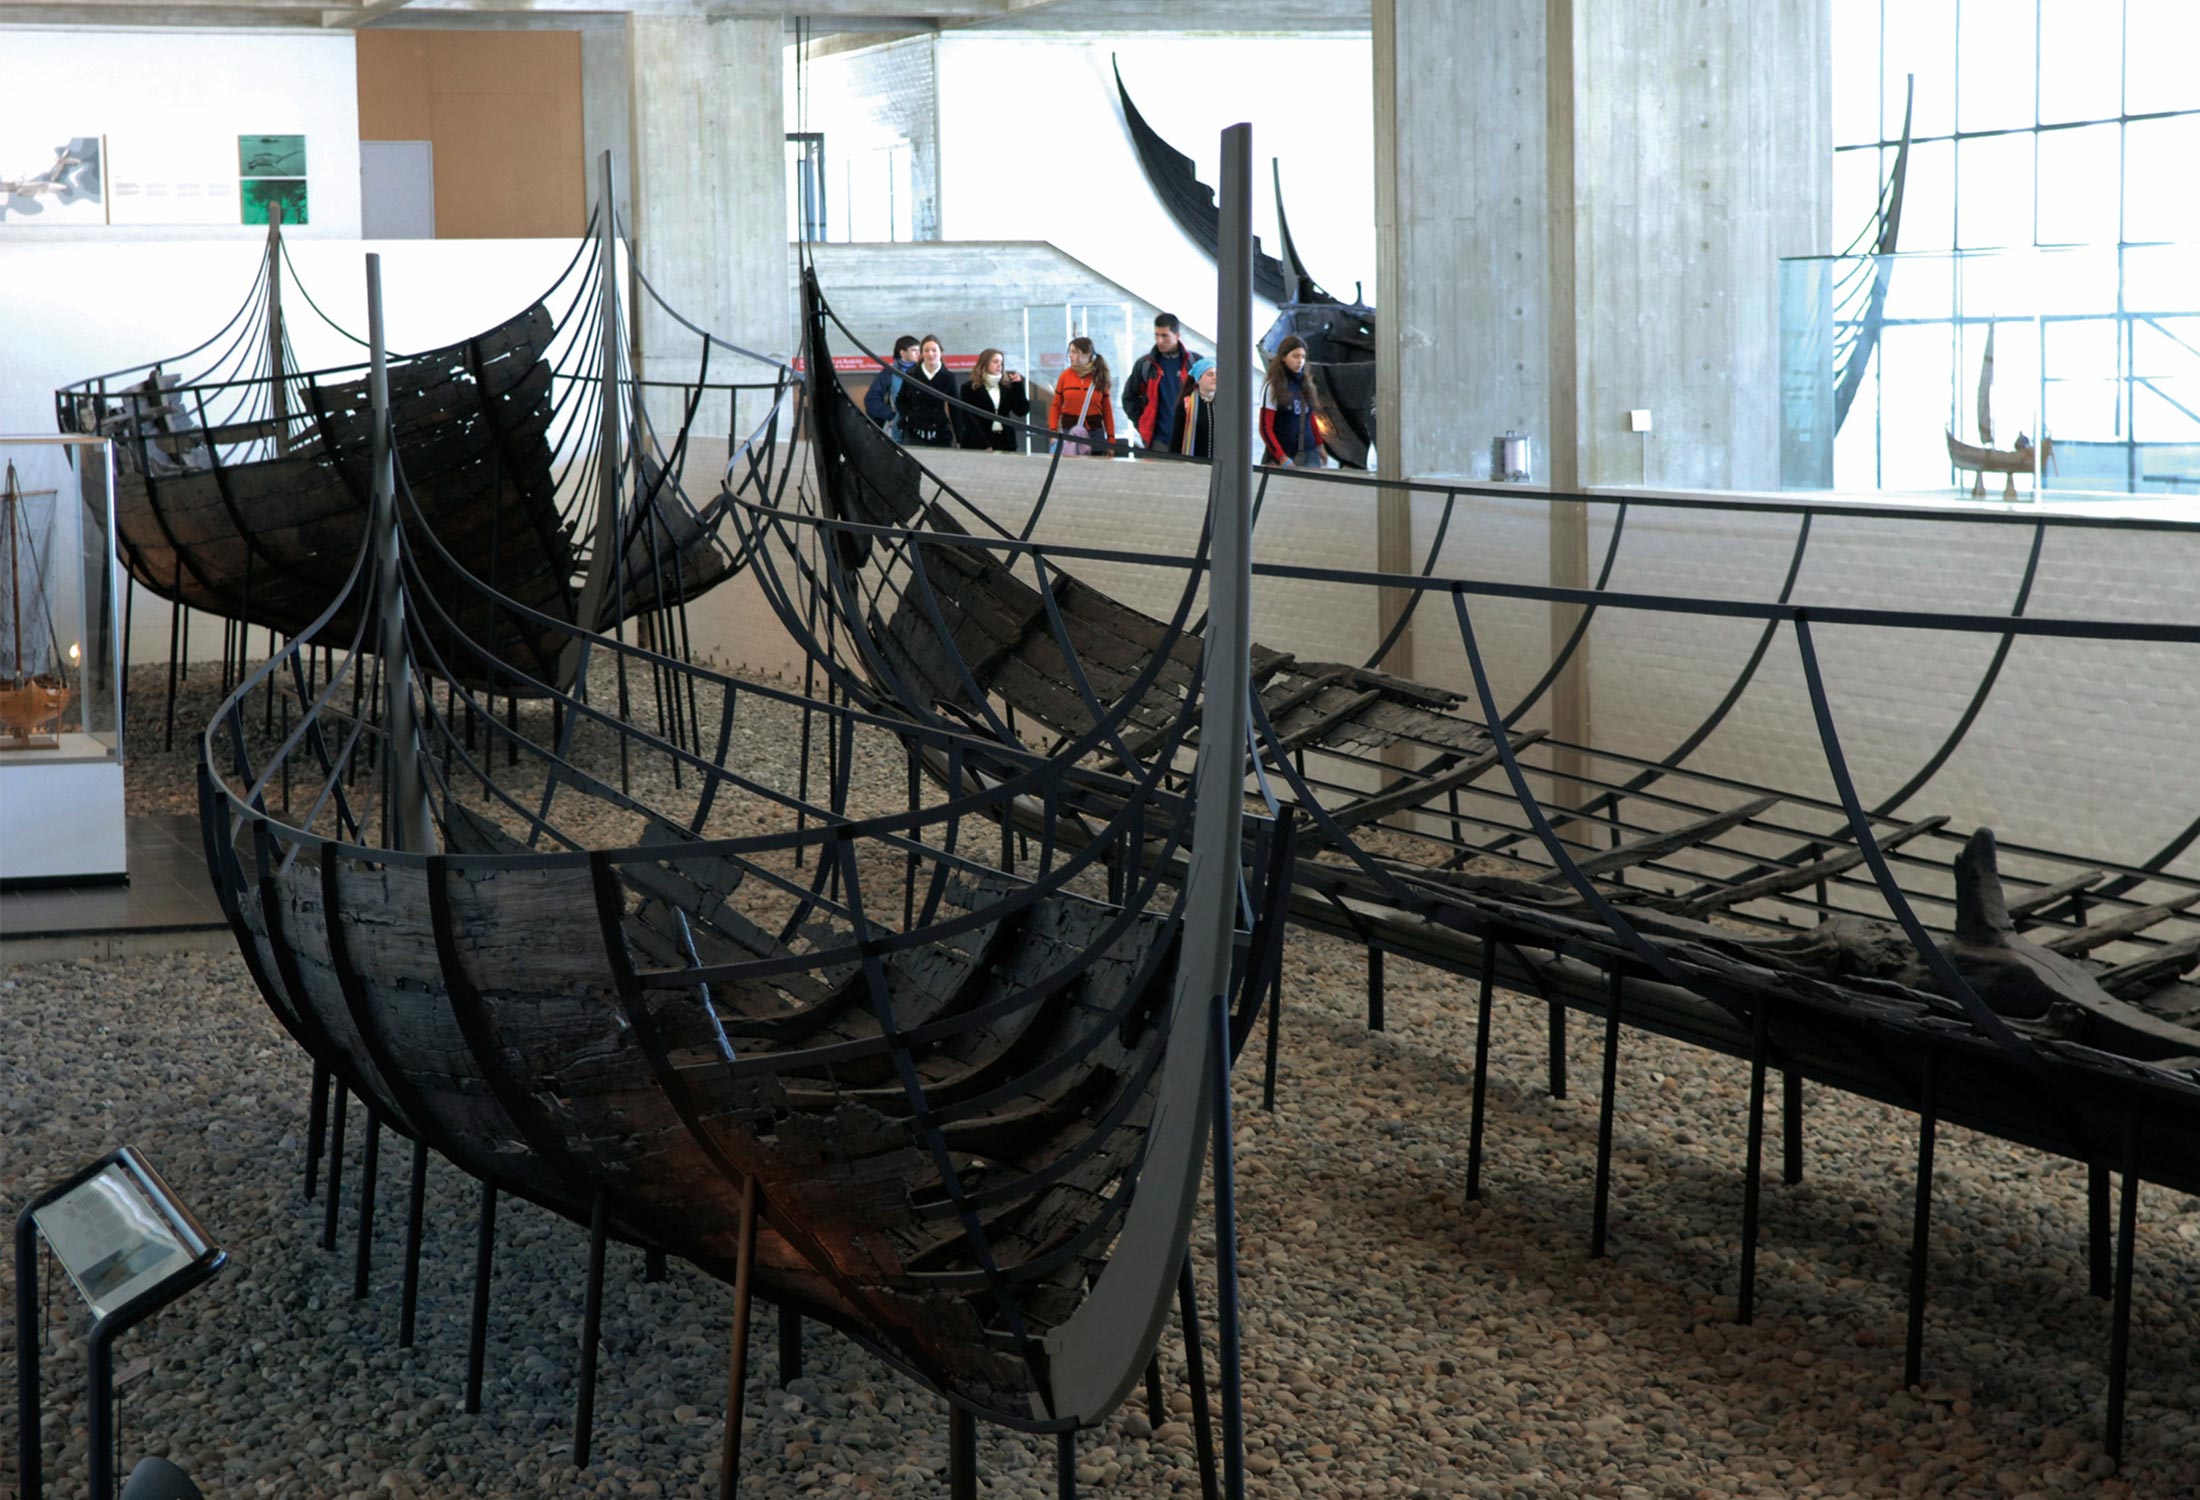 Wkingerschiffe im Roskilde Wikingerschiffsmuseum